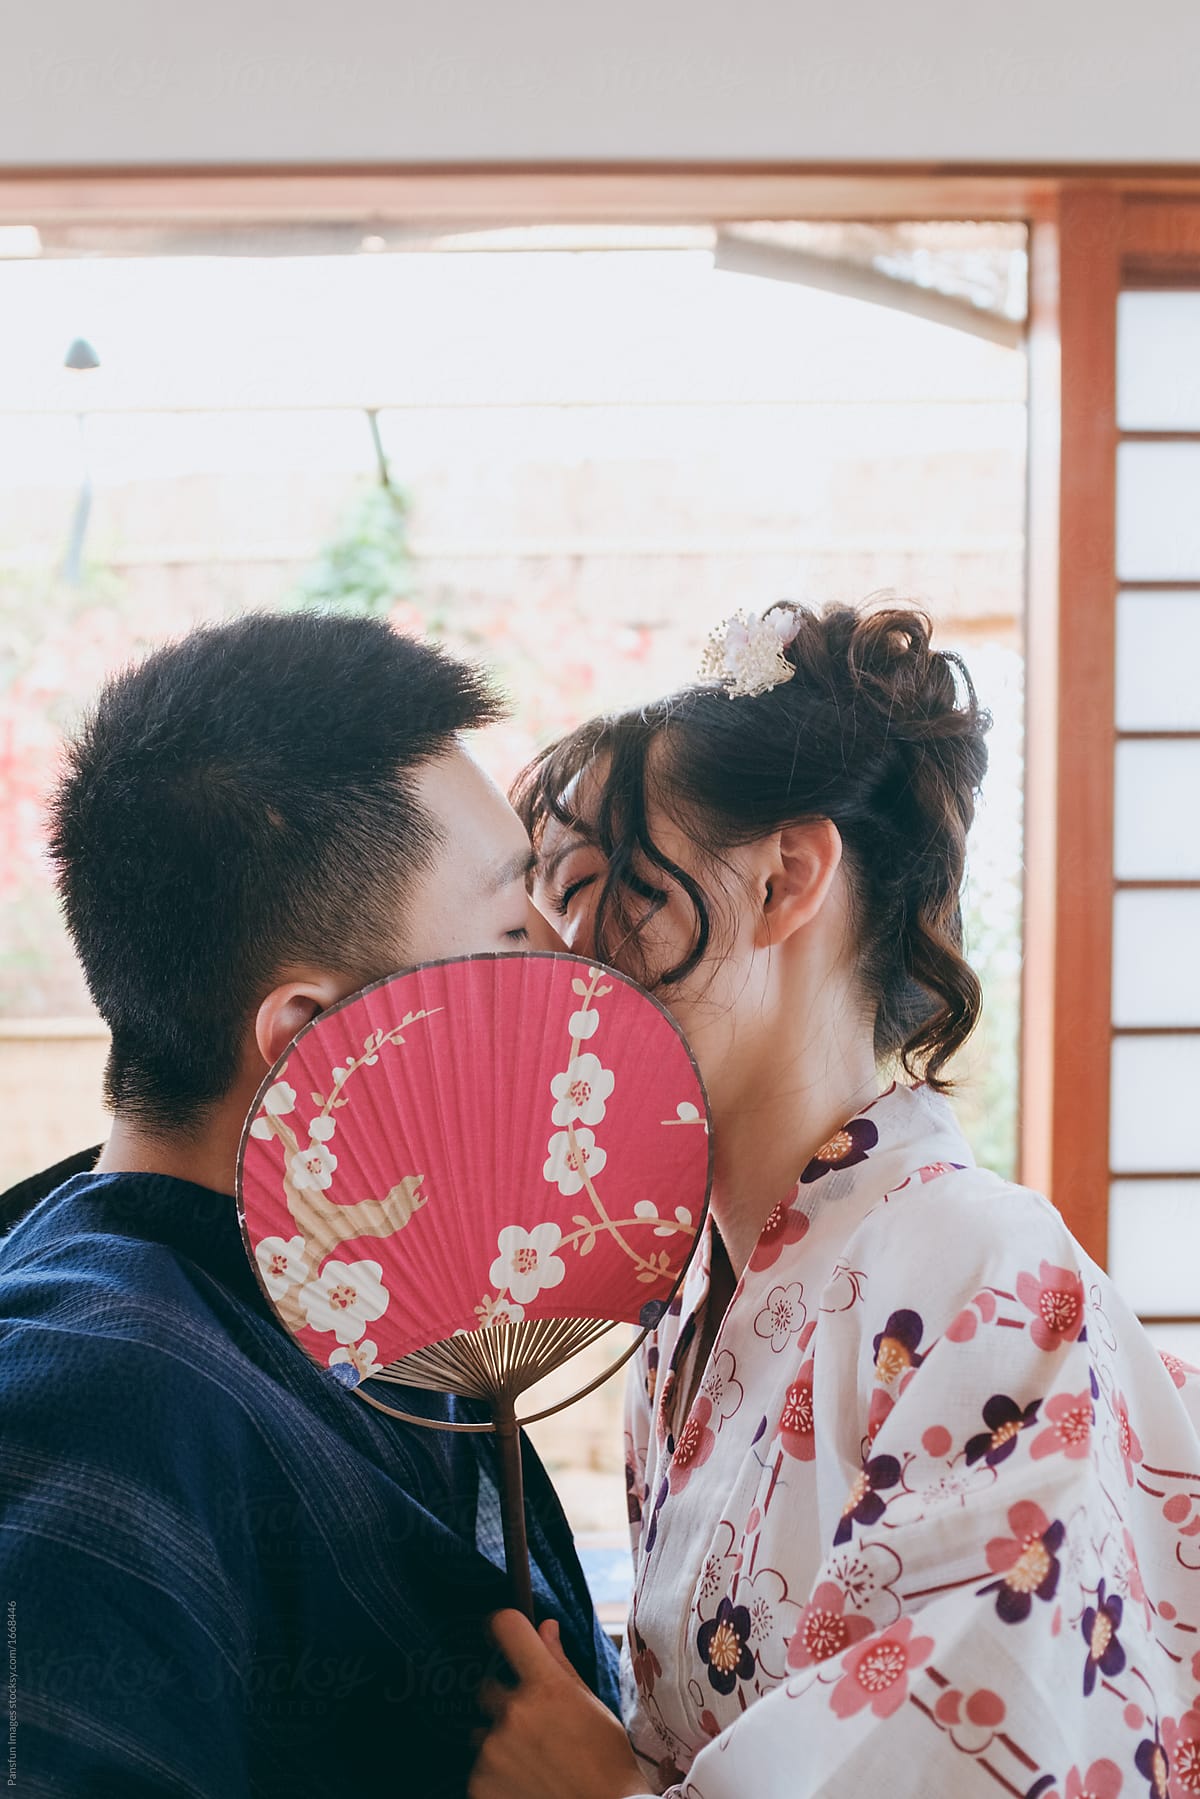 Asian lover kissing